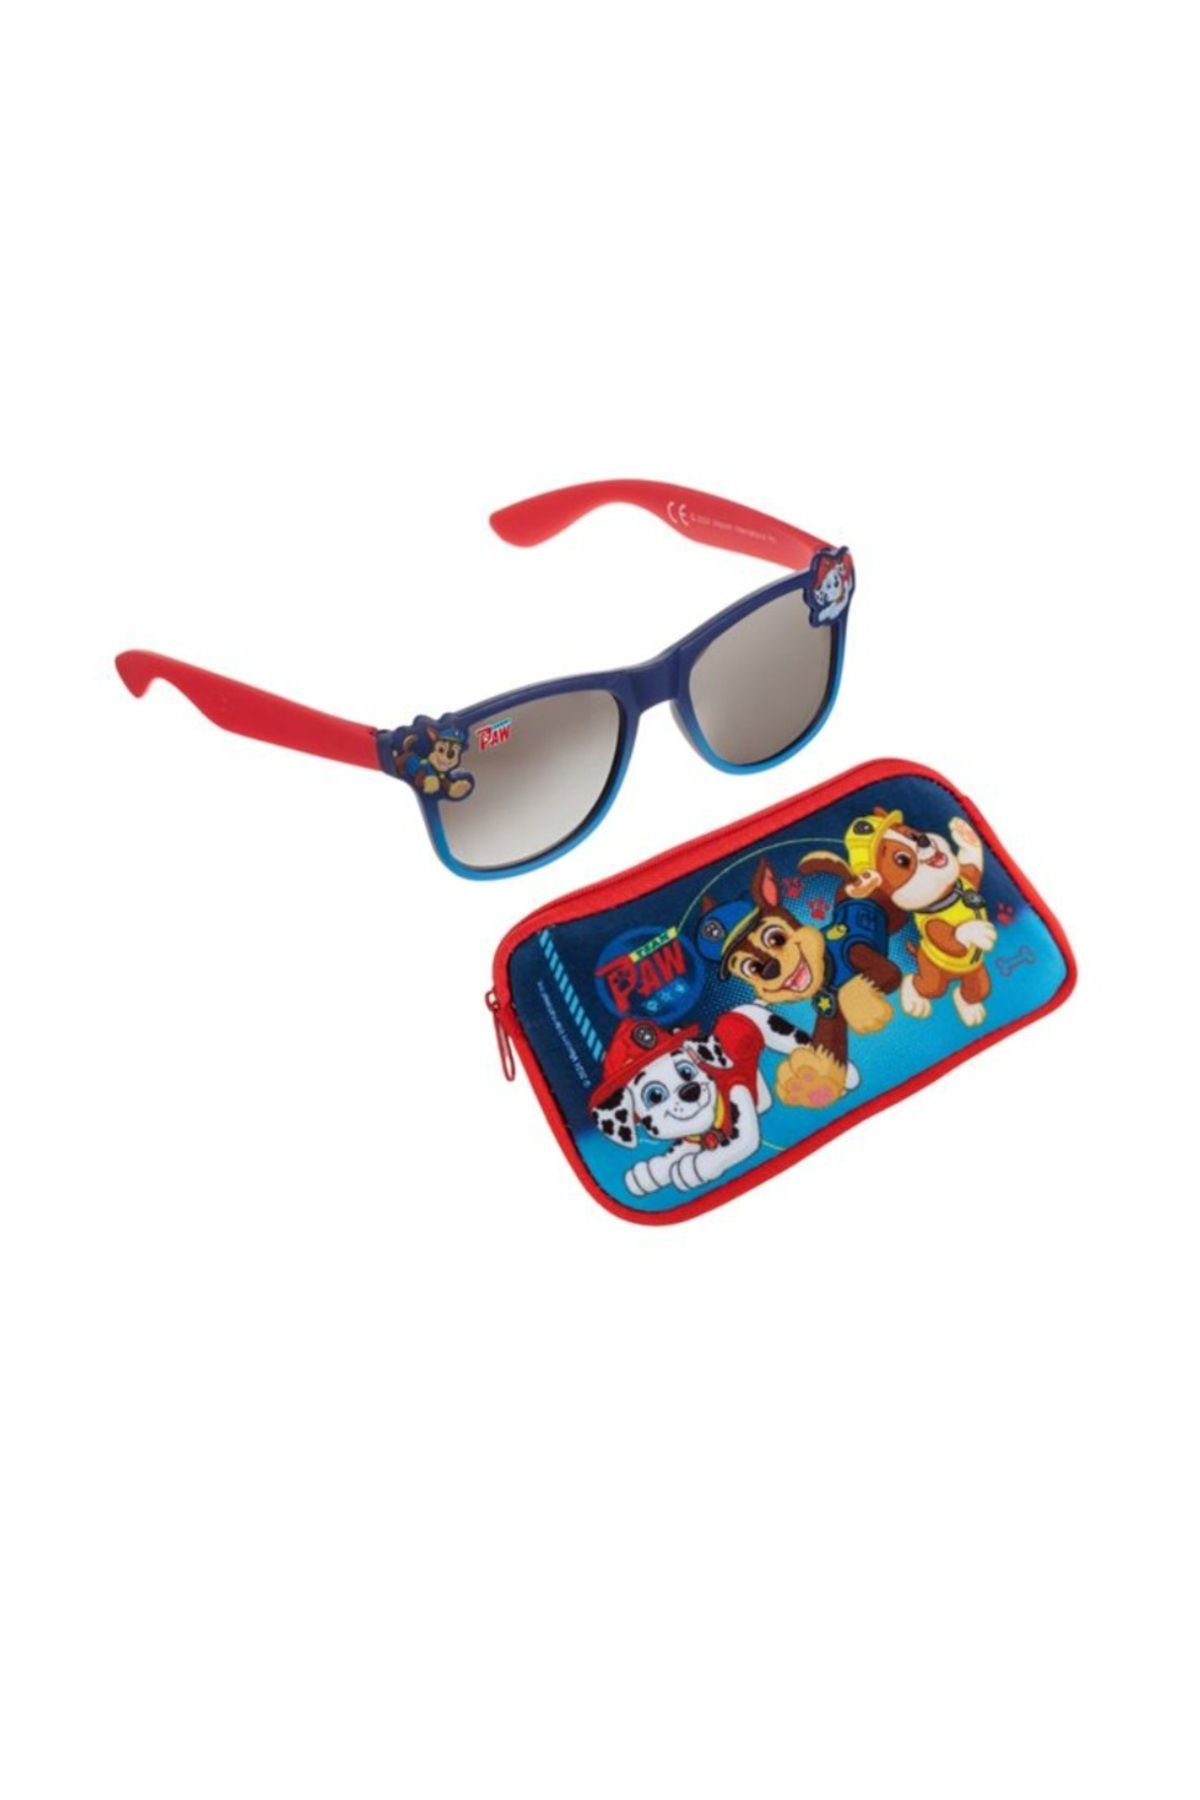 PAW PATROL çocuk güneş gözlüğü mavi kırmızı çerçeve ve kılıf